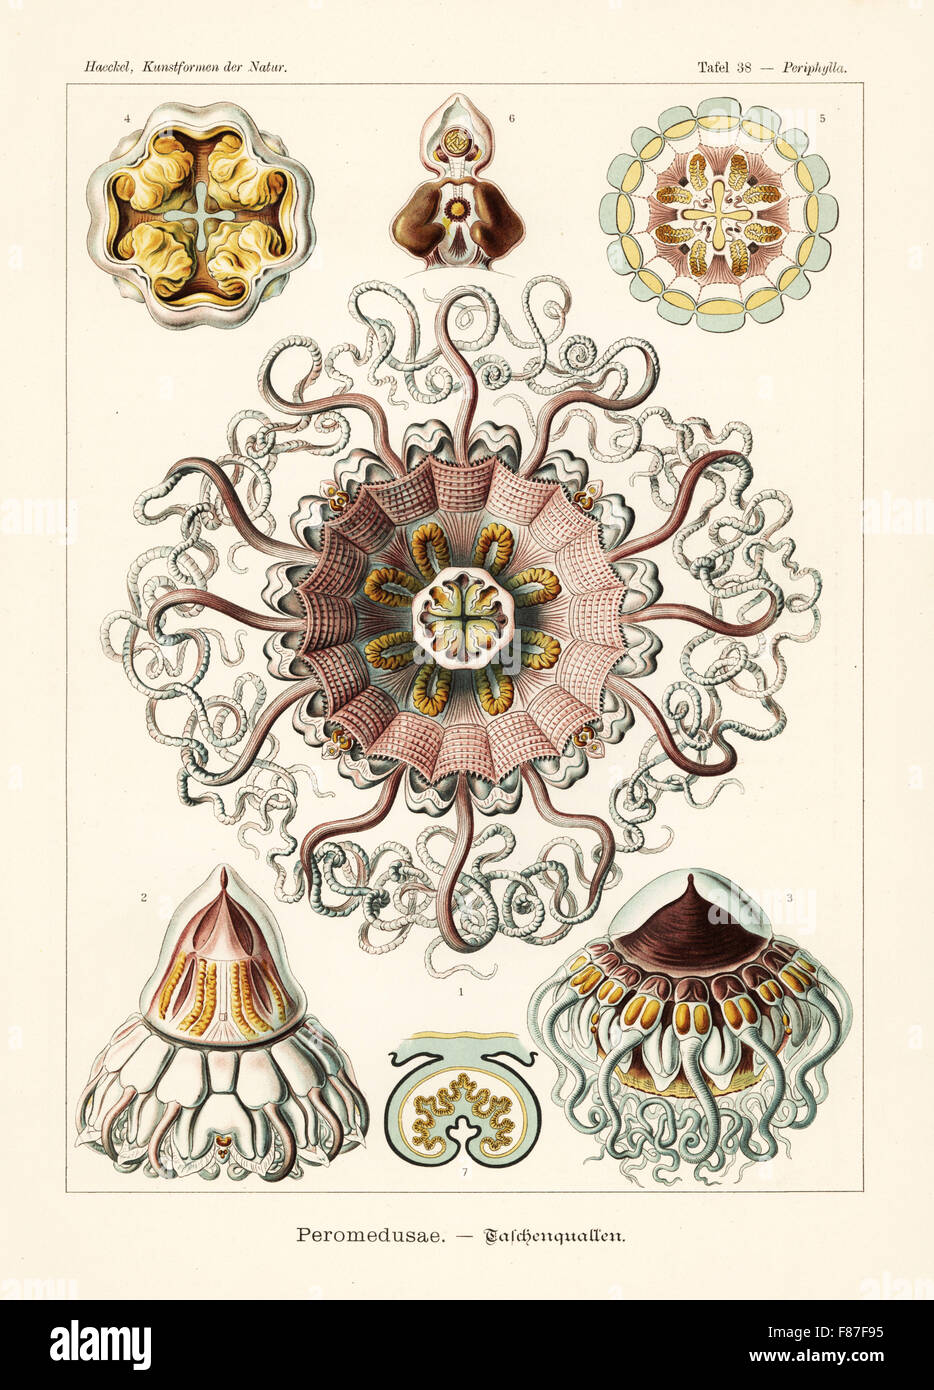 Peromedusae medusas: comerciante Periphylla periphylla cap medusas, 1-7. Por Adolf Glitsch Chromolithograph desde una ilustración por Ernst Haeckel de formas de arte en la naturaleza, Kunstformen der Natur, Liepzig, Alemania, 1904. Foto de stock